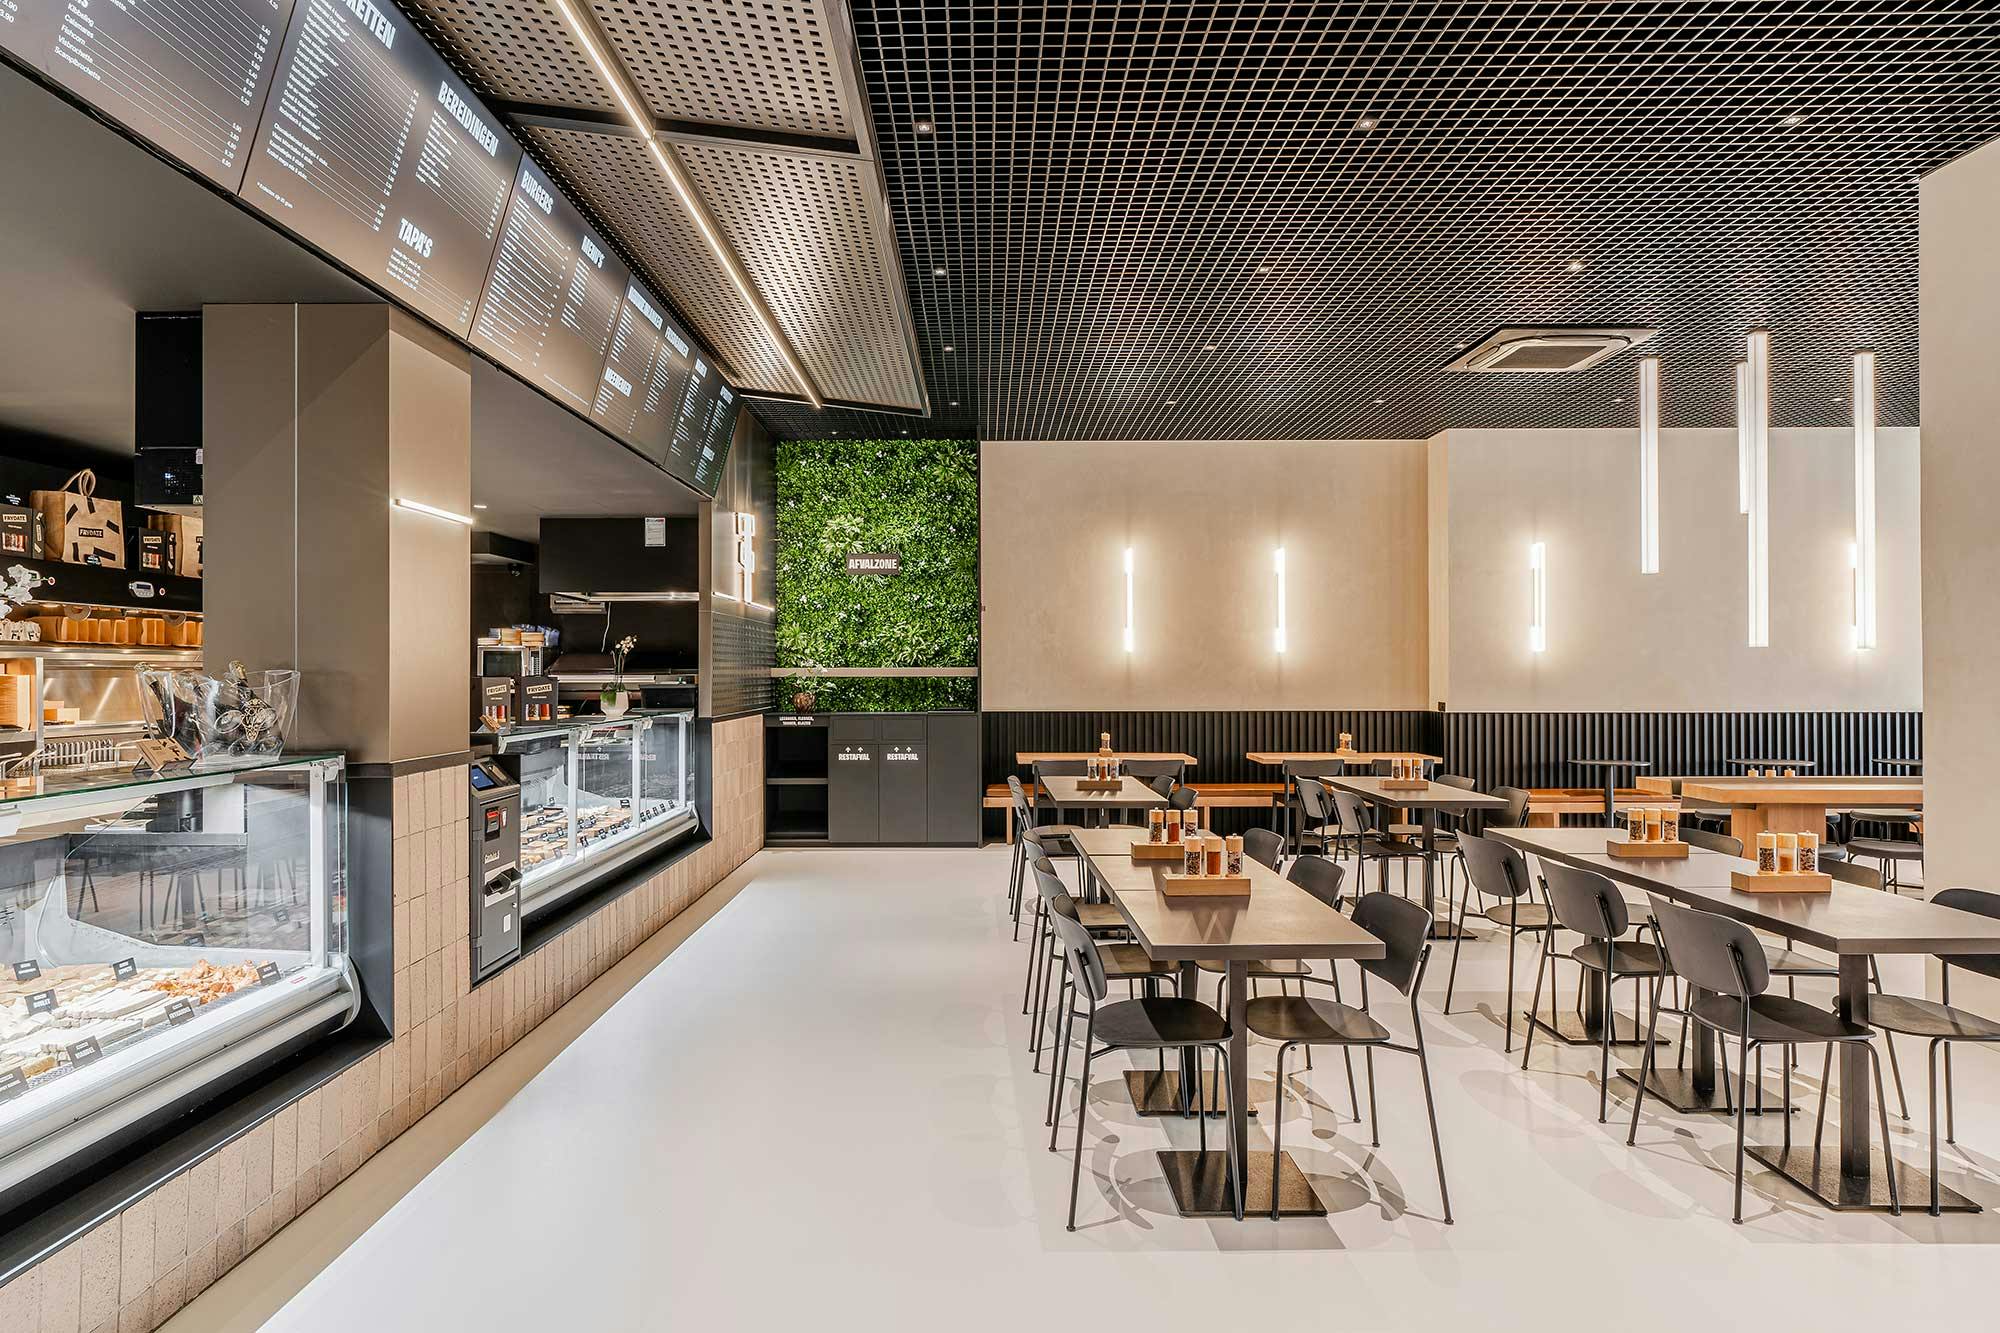 Imagen número 45 de la sección actual de Fusion 3.0, el restaurante italiano de estilo industrial con Silestone aportando calidez